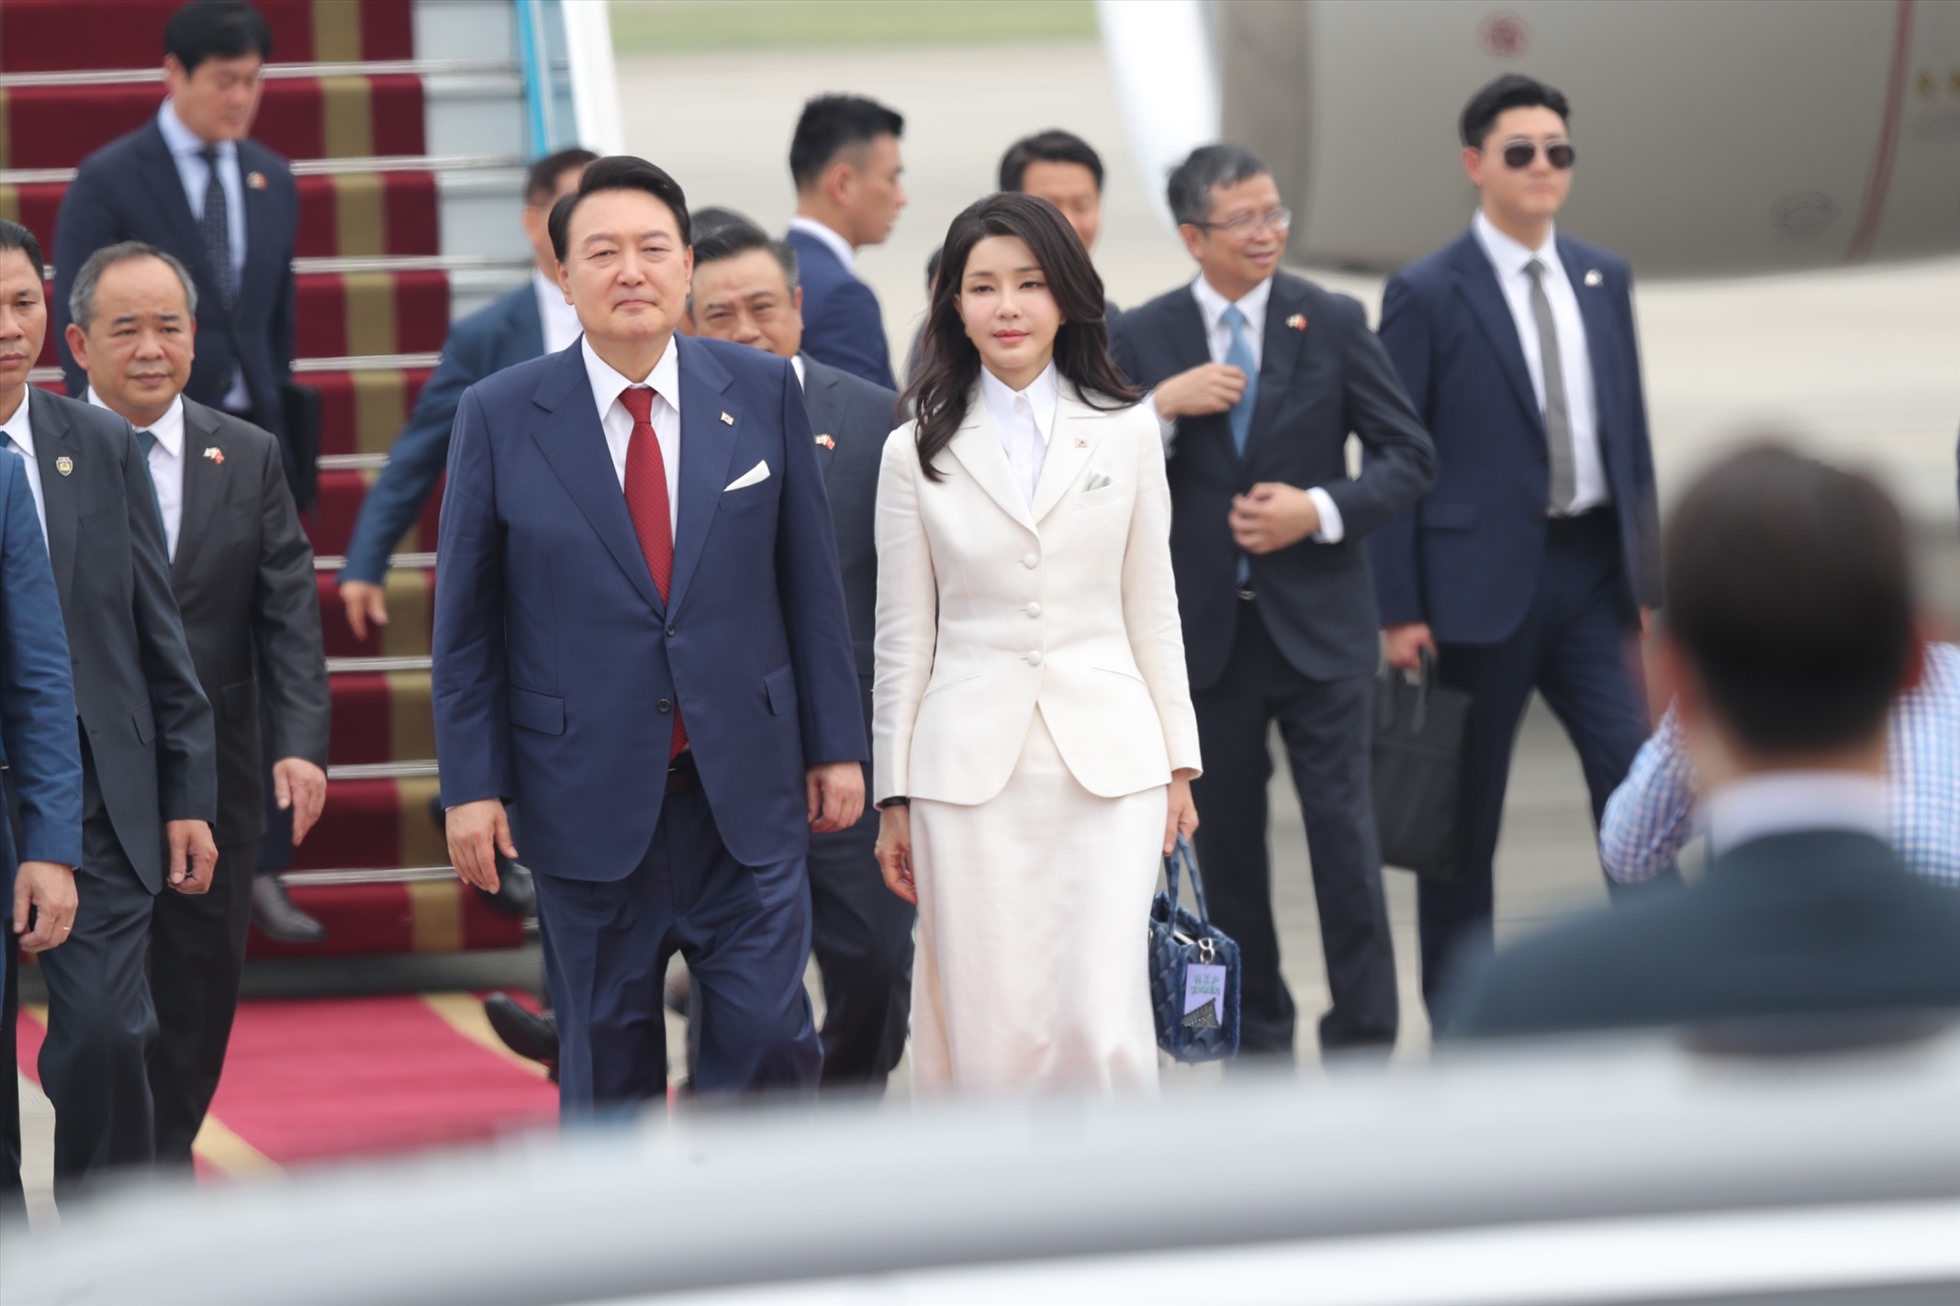 Đây là chuyến thăm song phương đầu tiên của ông Yoon Suk Yeol tới một quốc gia Đông Nam Á kể từ sau khi nhậm chức Tổng thống Hàn Quốc. Ảnh: Hải Nguyễn